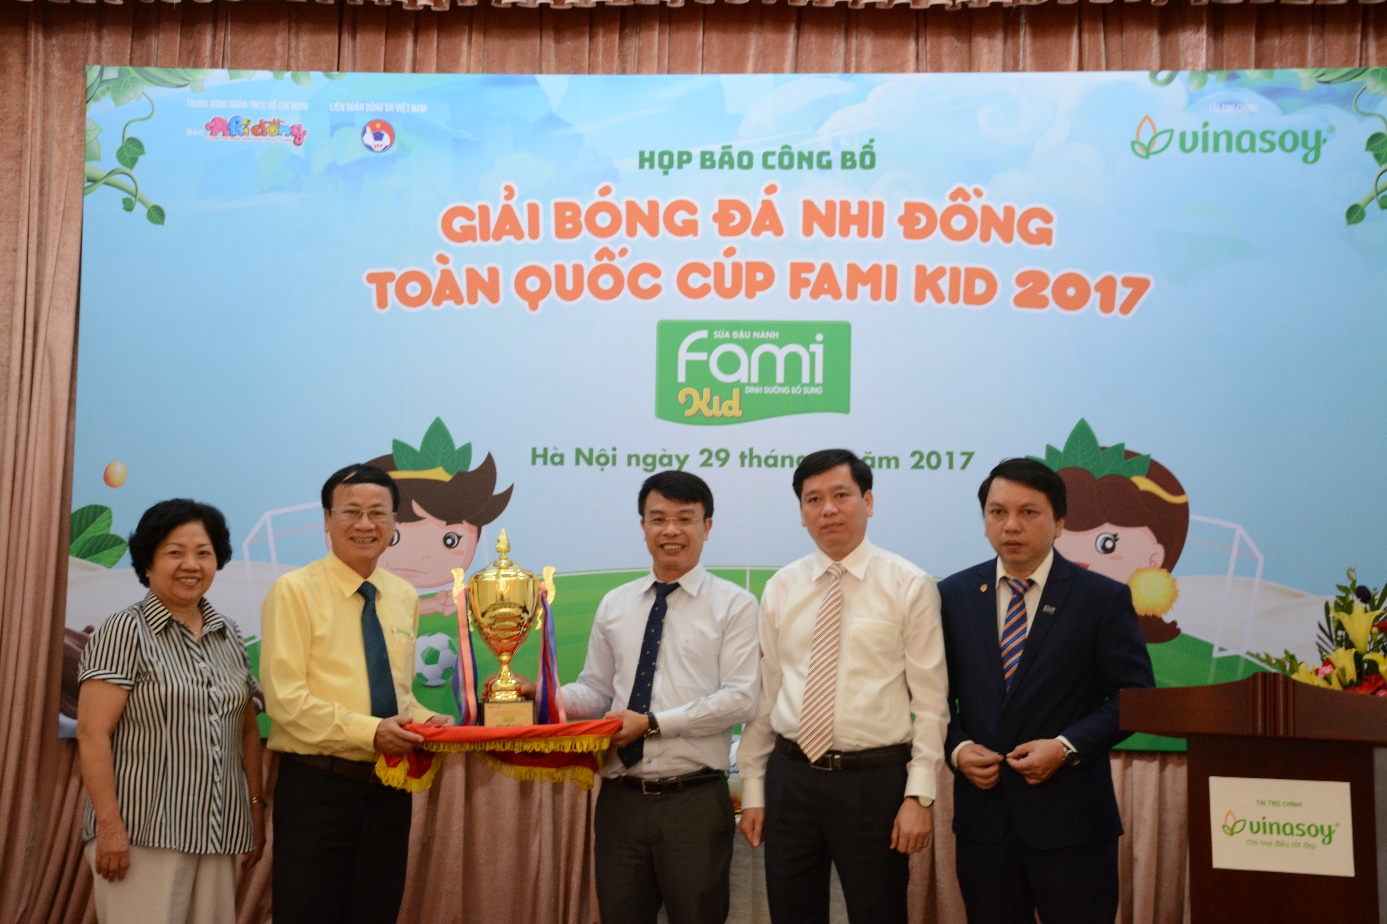 giai-bong-da-nhi-dong-toan-quoc-cup-fami-kid-2017-1